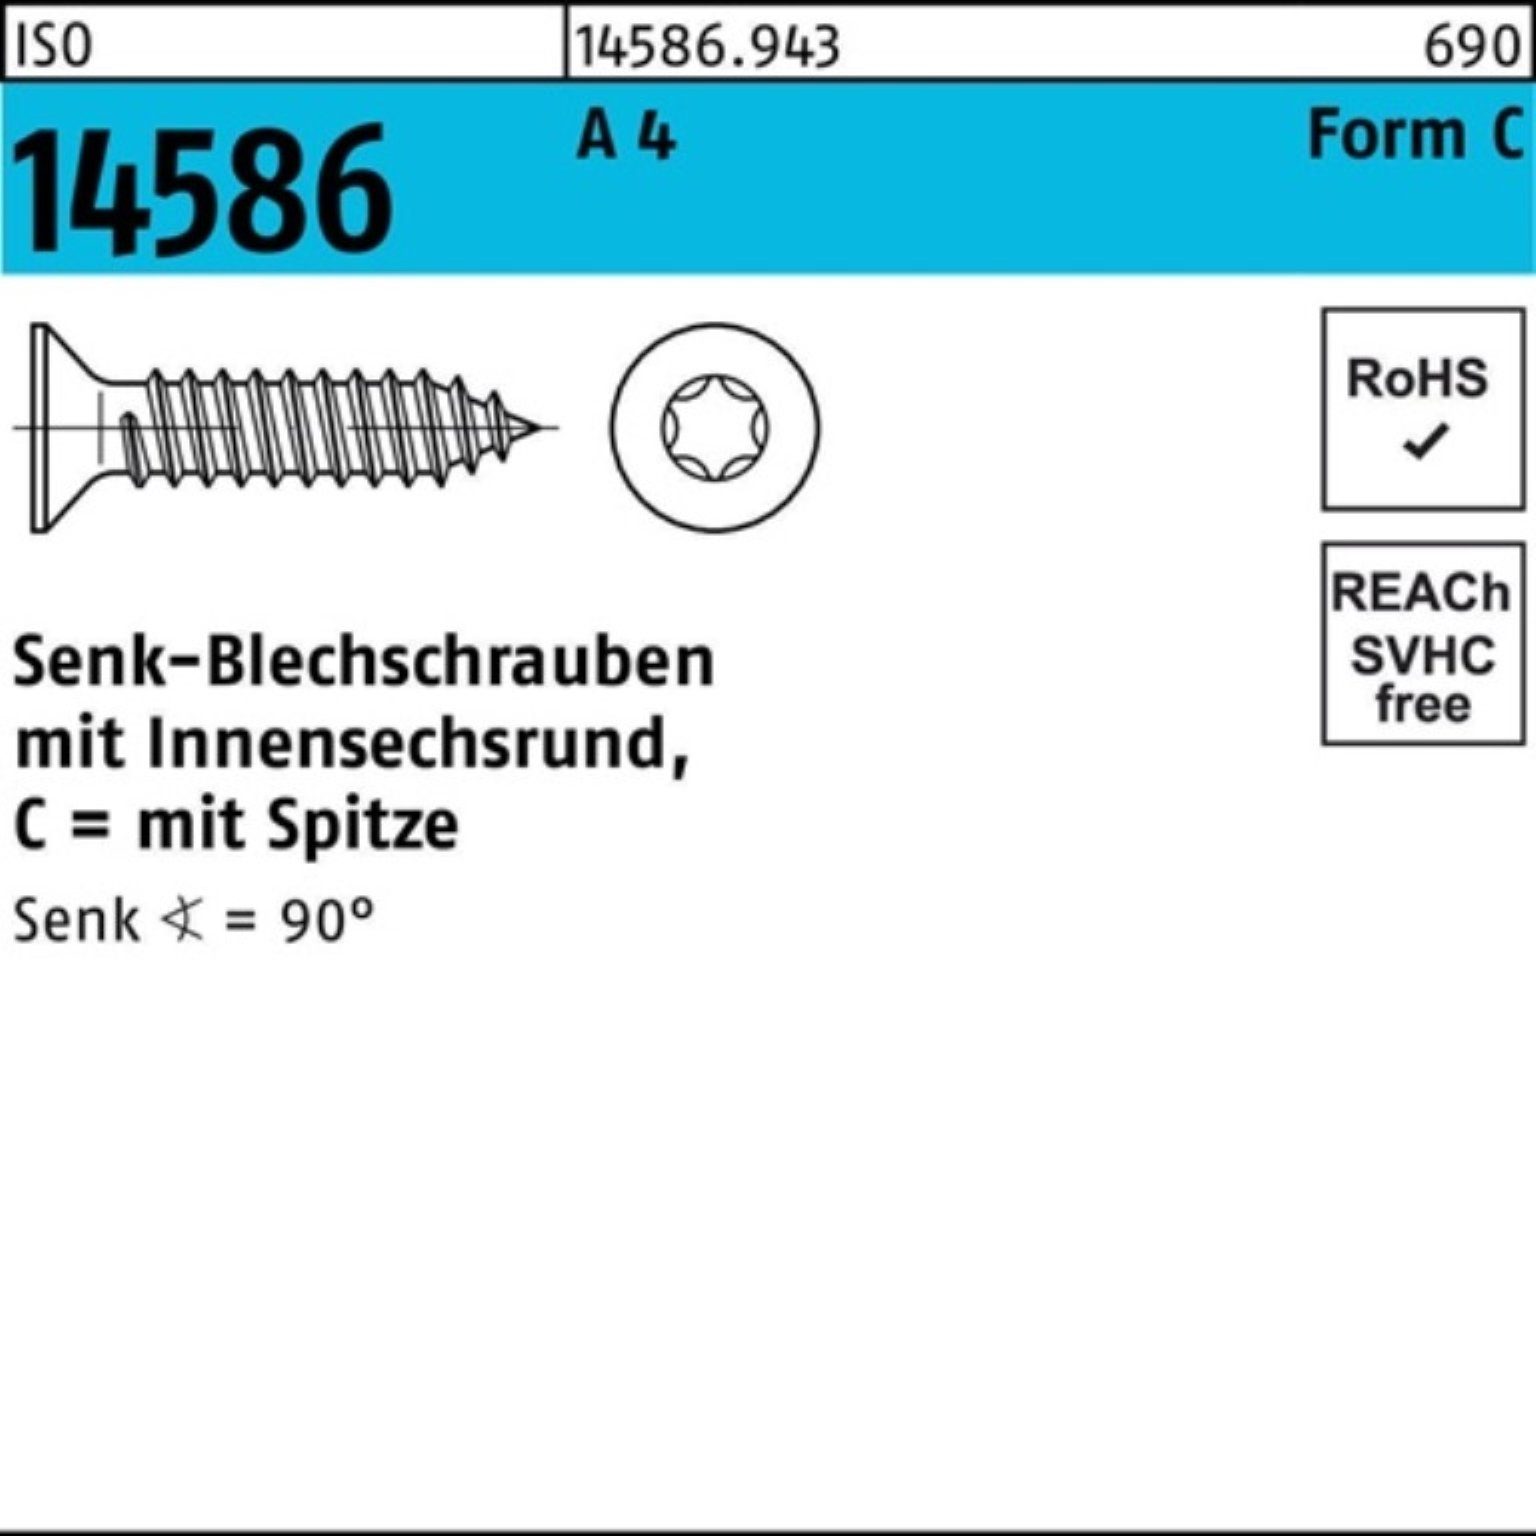 Reyher Schraube 500er Pack Senkblechschraube ISO 14586 ISR/Spitze 5,5x 19-T25 A 4 500